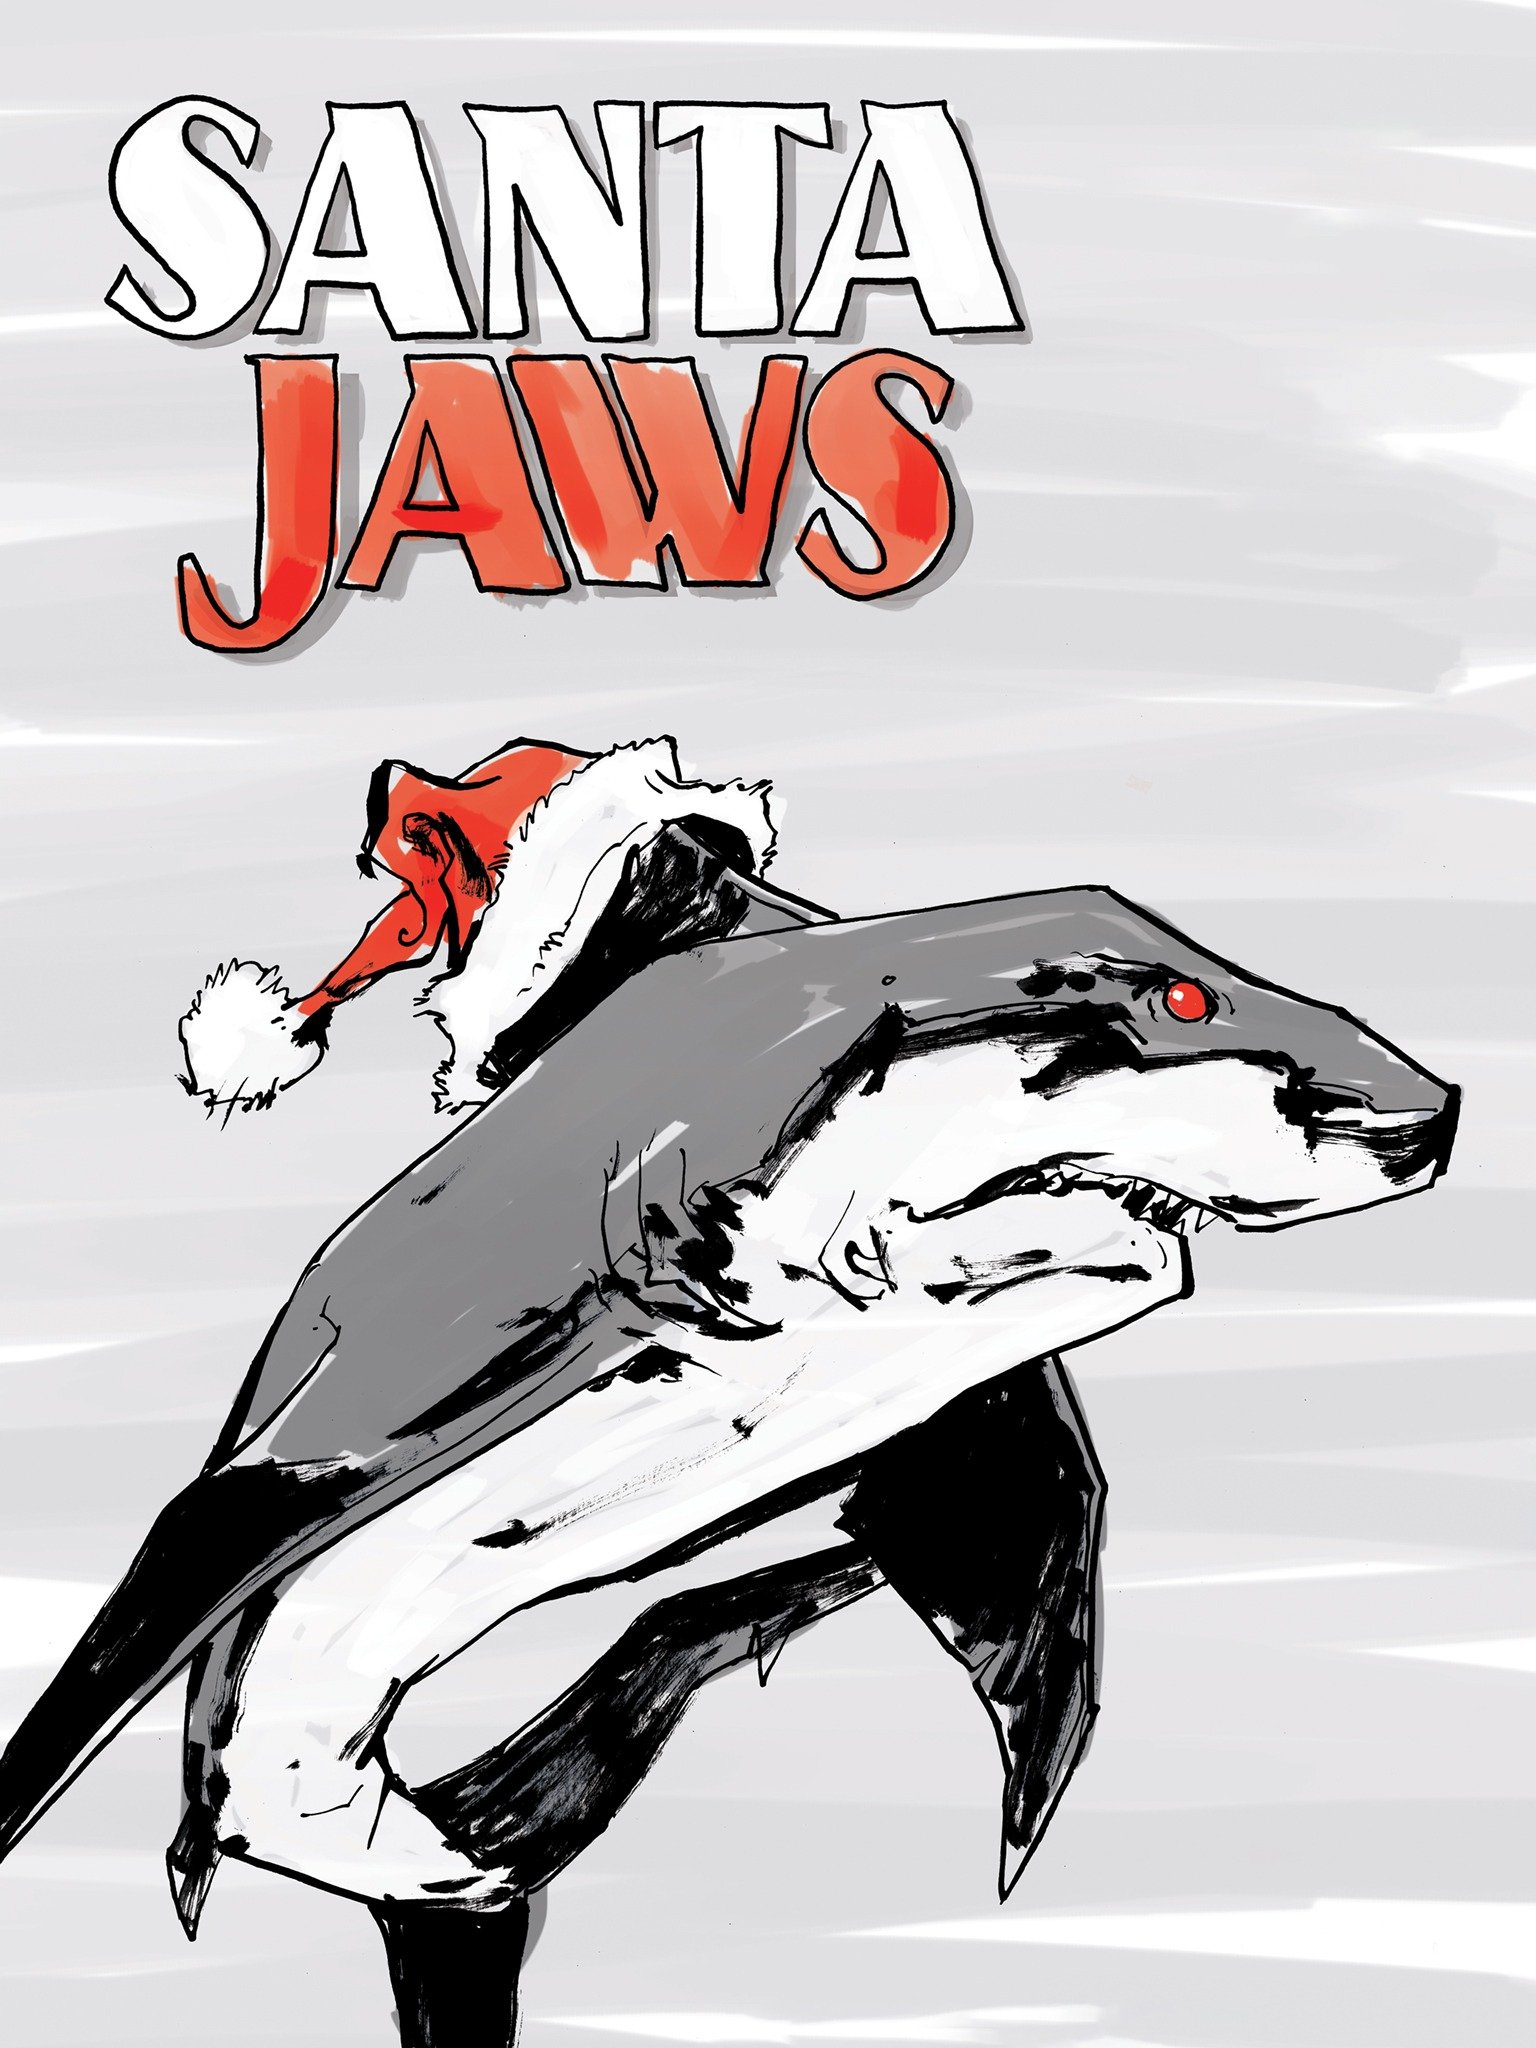 Santa Jaws Rotten Tomatoes